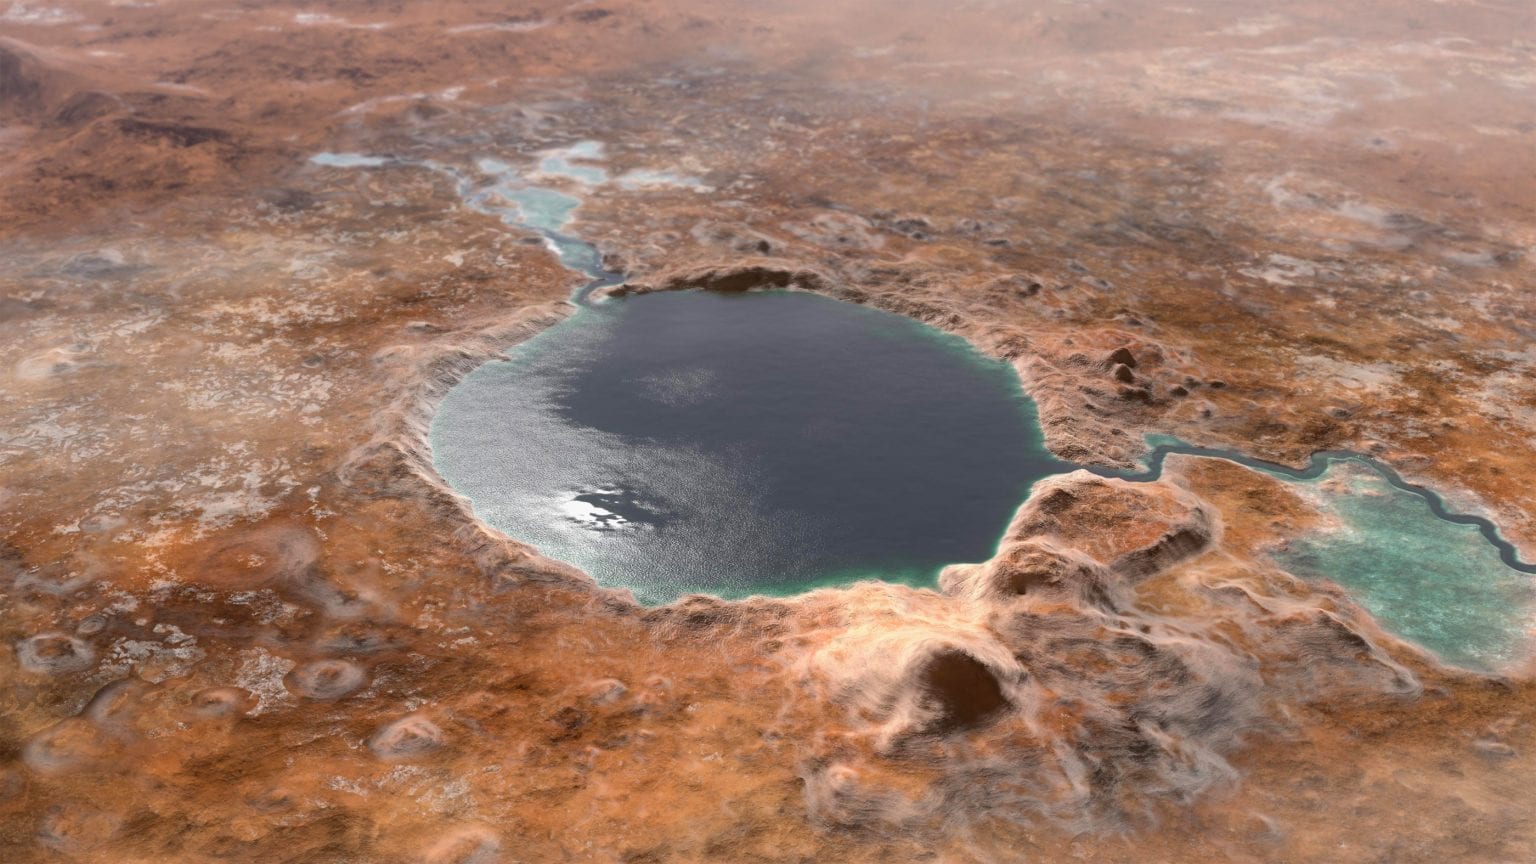 Krater Jezero, koji danas služi kao mjesto slijetanja rovera Perseverance, nekoć je bio divovsko jezero. Znanstvenici vjeruju da je to jedno od najboljih mjesta za pretraživanje drevnog mikrobnog života na Marsu, što je još jednom predložilo novo istraživanje. Izvor: NASA / JPL-Caltech